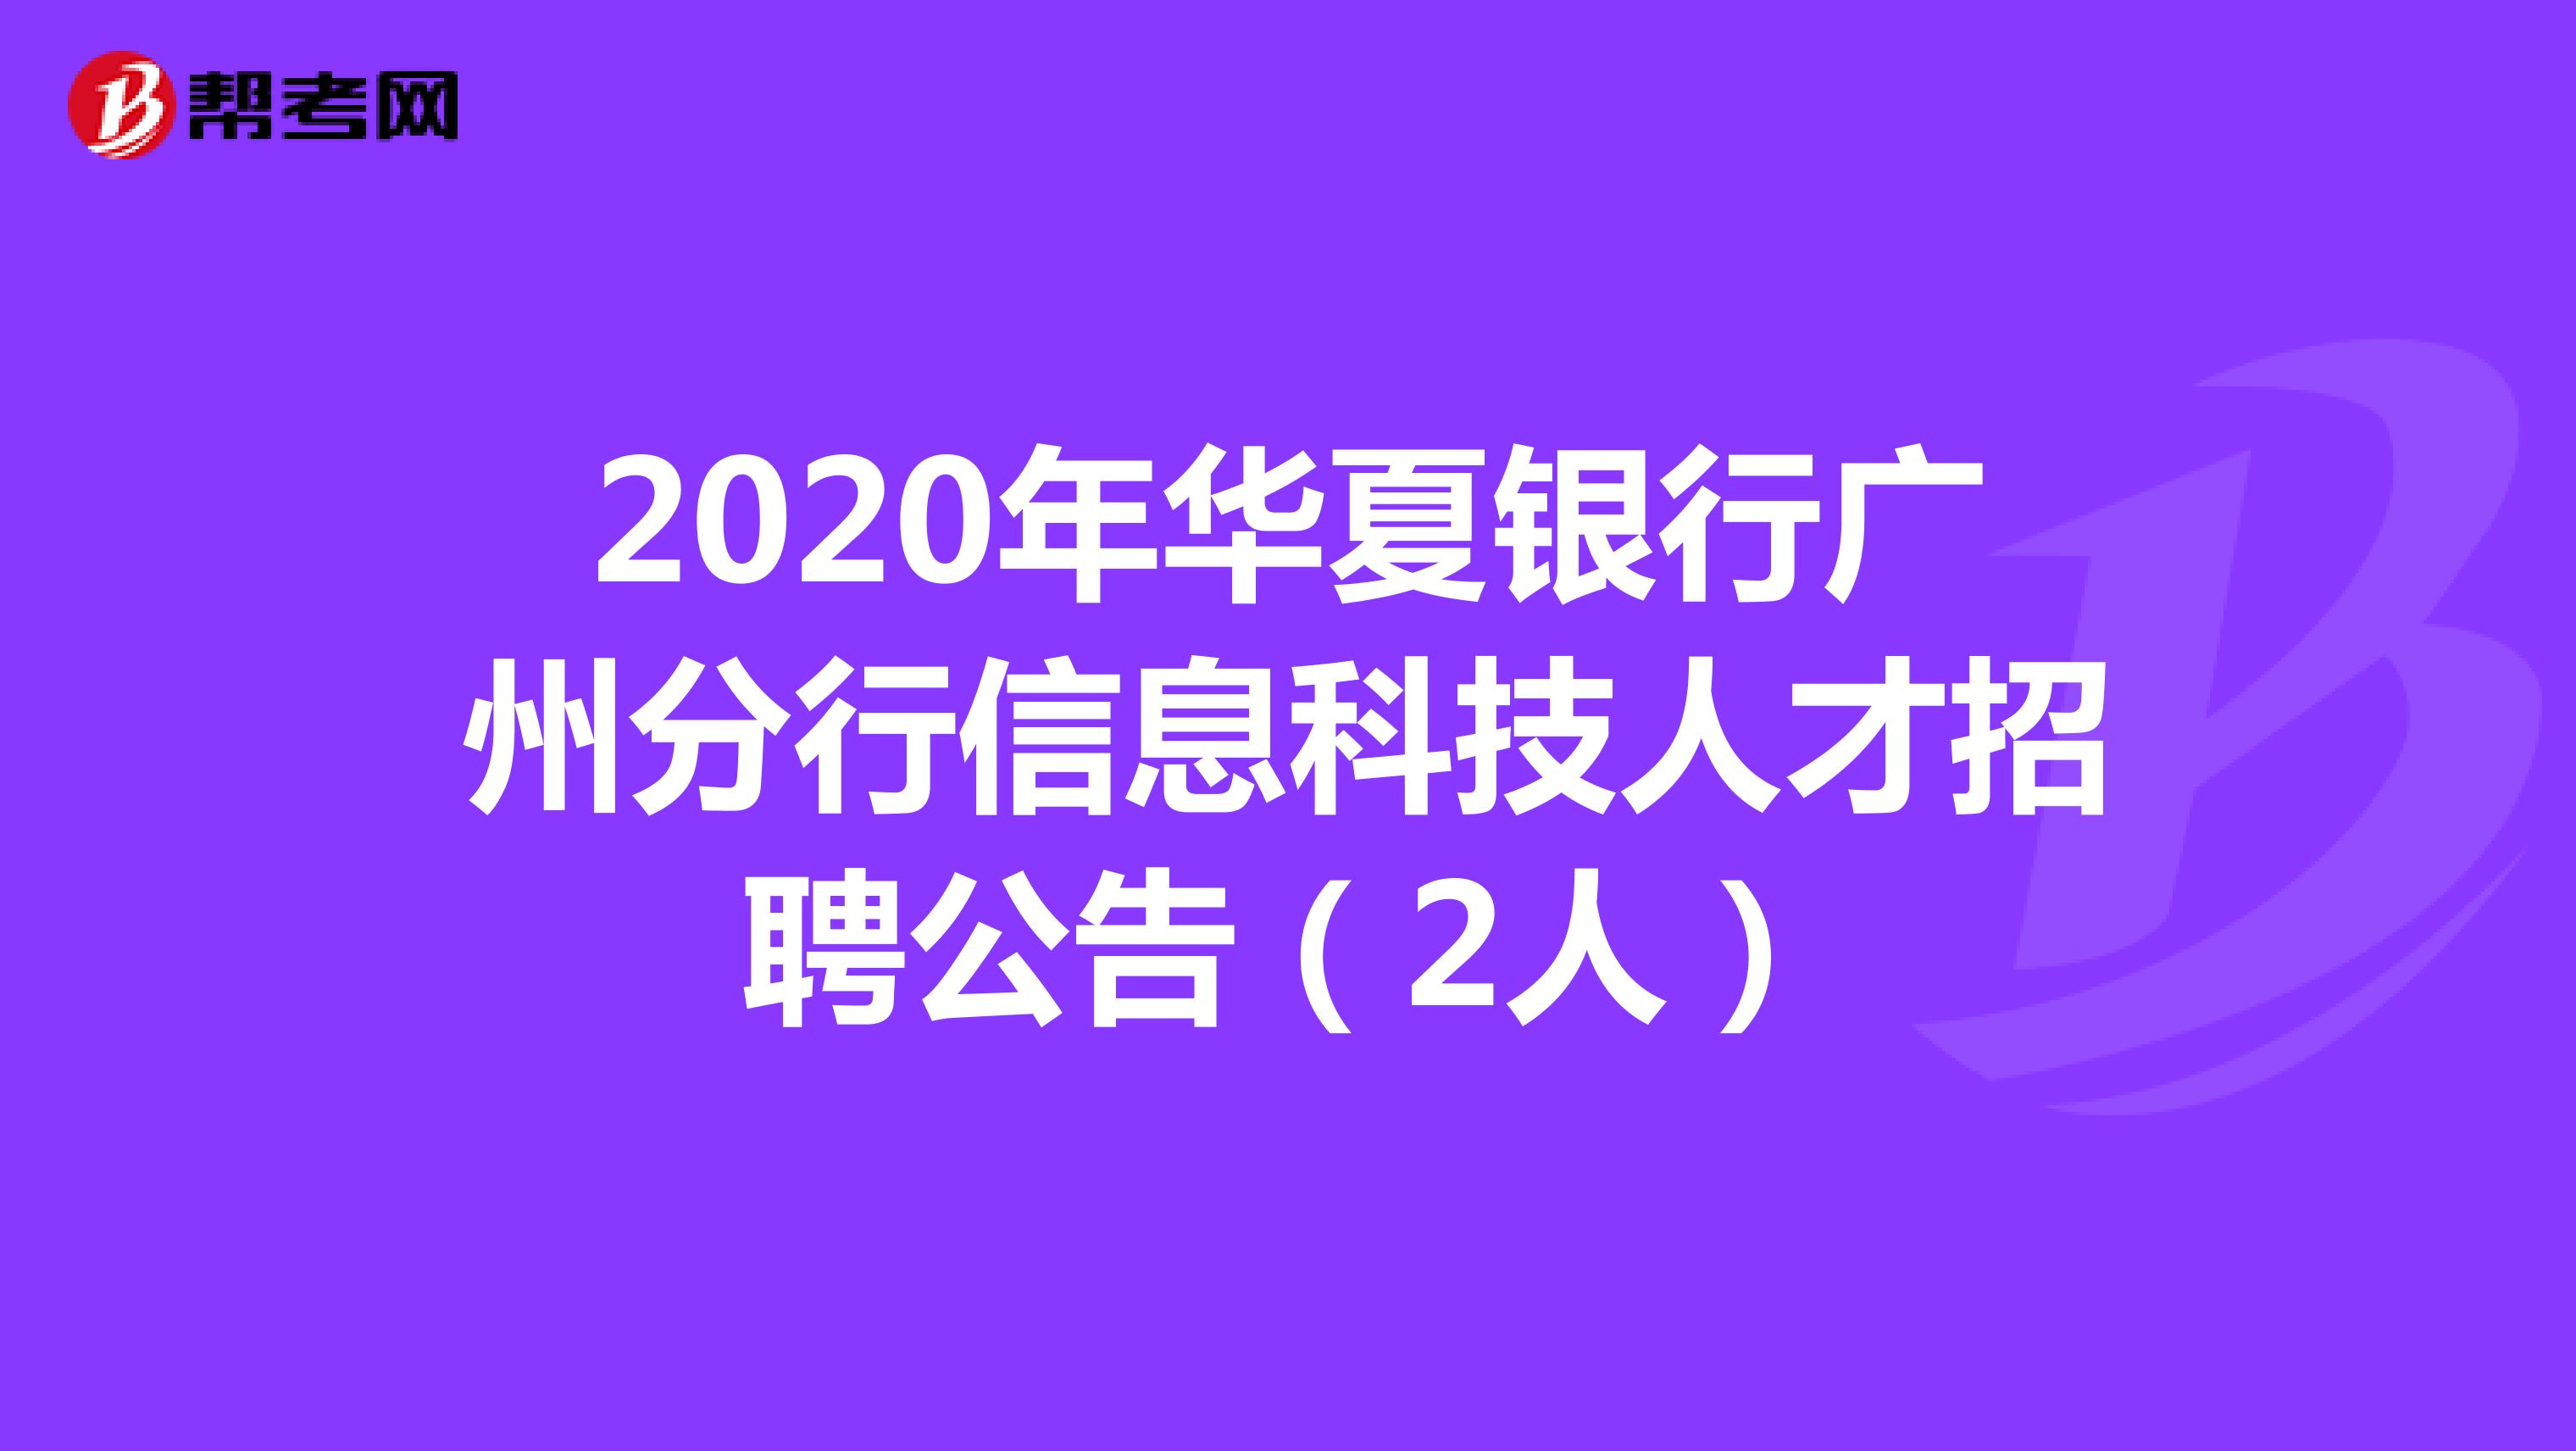 2020年华夏银行广州分行信息科技人才招聘公告（2人）